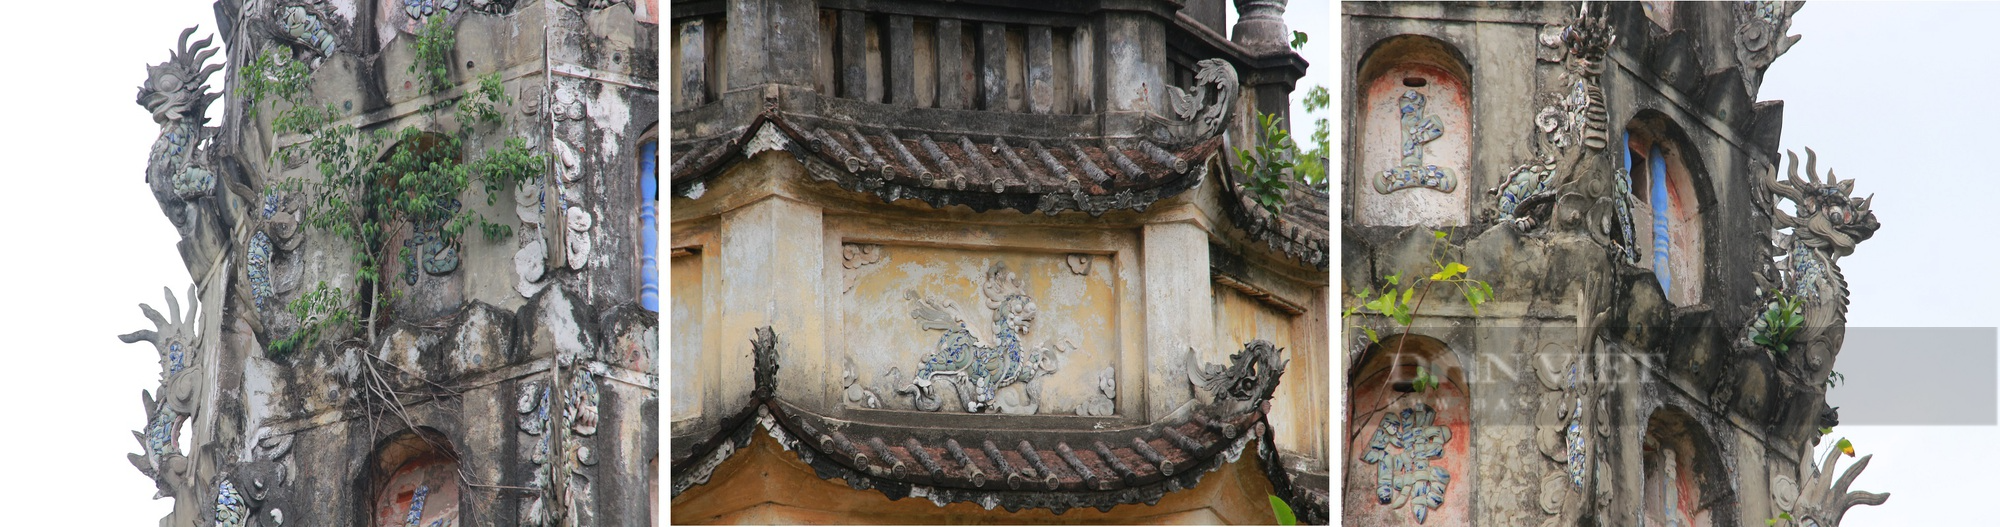 Độc đáo tháp Cửu phẩm Liên Hoa cao 9 tầng hoa sen ở một ngôi chùa cổ kính đất Nam Định- Ảnh 7.